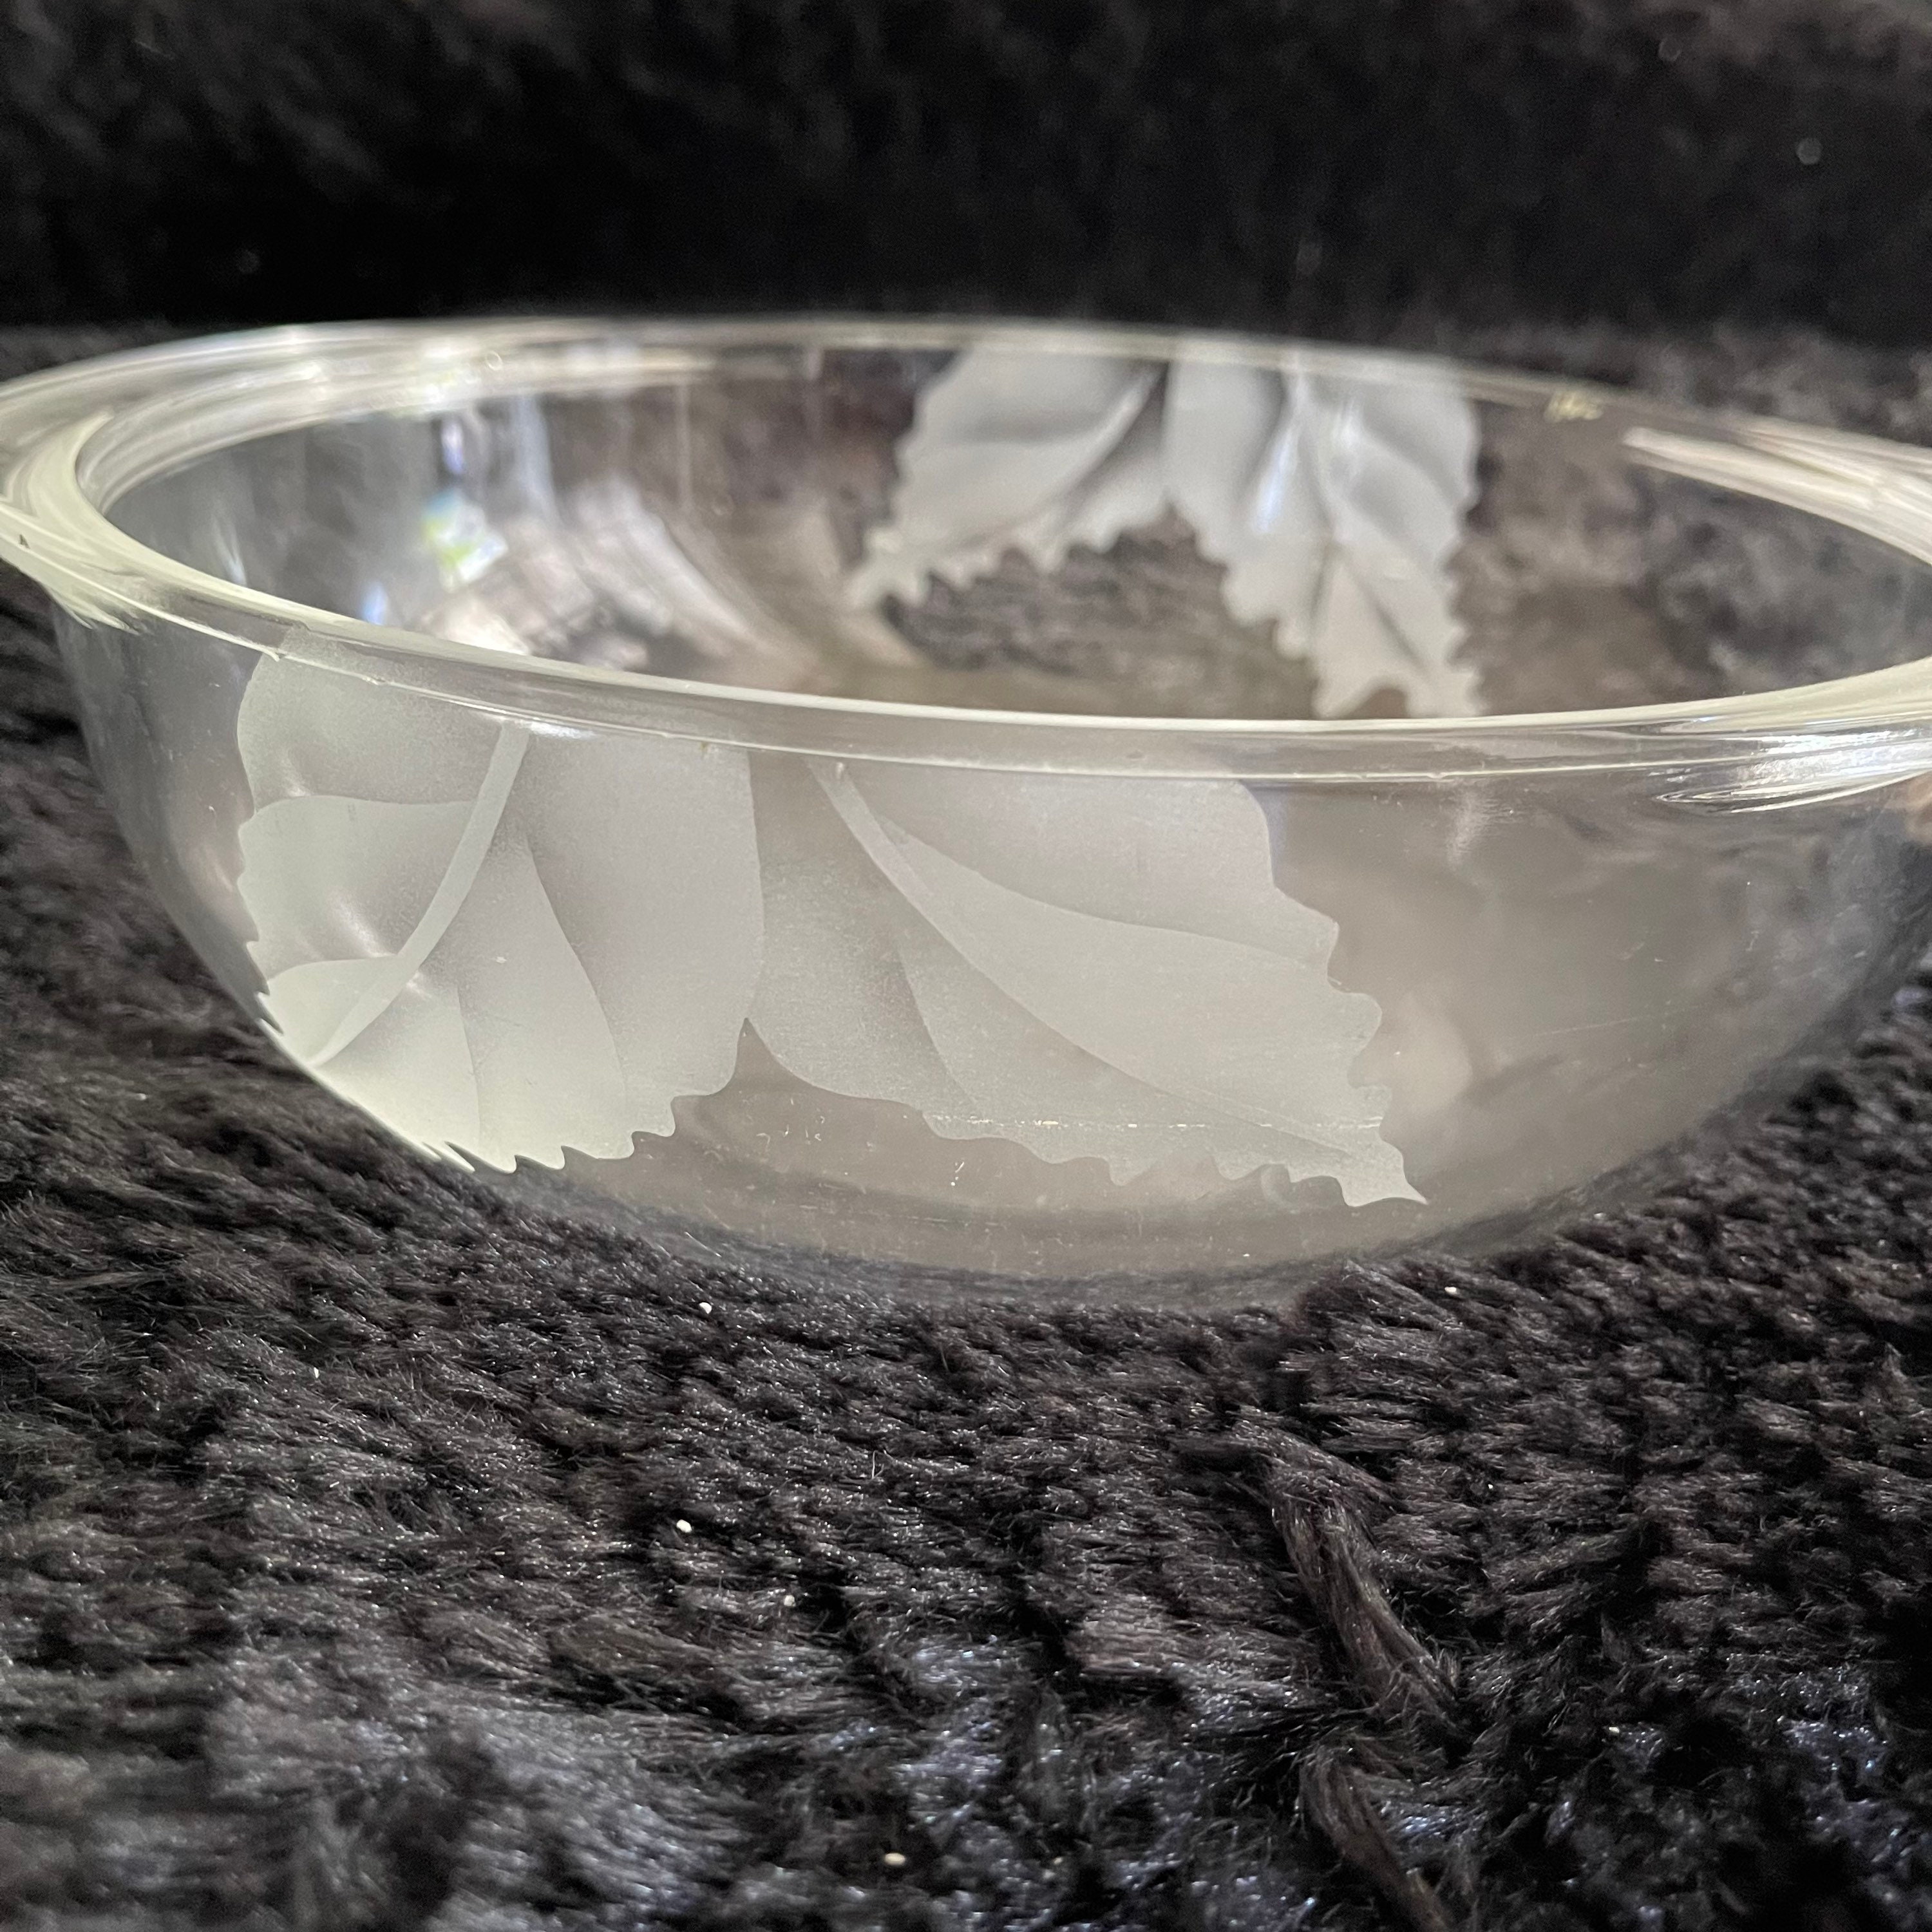 Vintage Pyrex Double Handle Clear Glass Dish Bowl 2 Qt. 